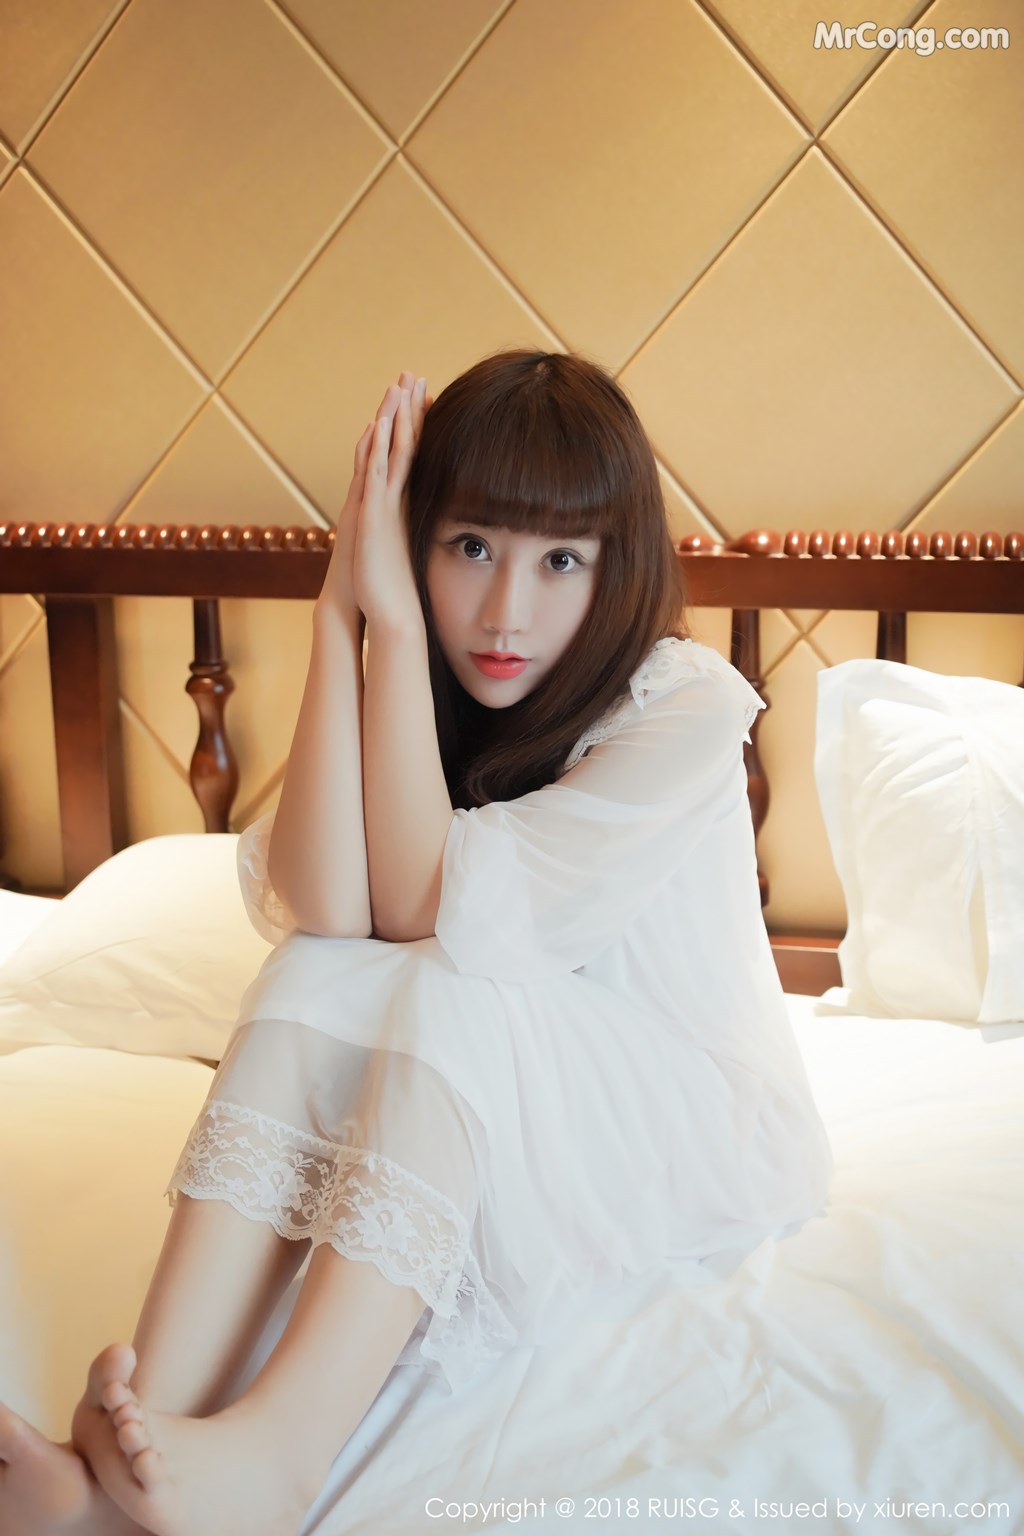 RuiSG Vol.043: Model Xia Xiao Xiao (夏 笑笑 Summer) (43 photos)